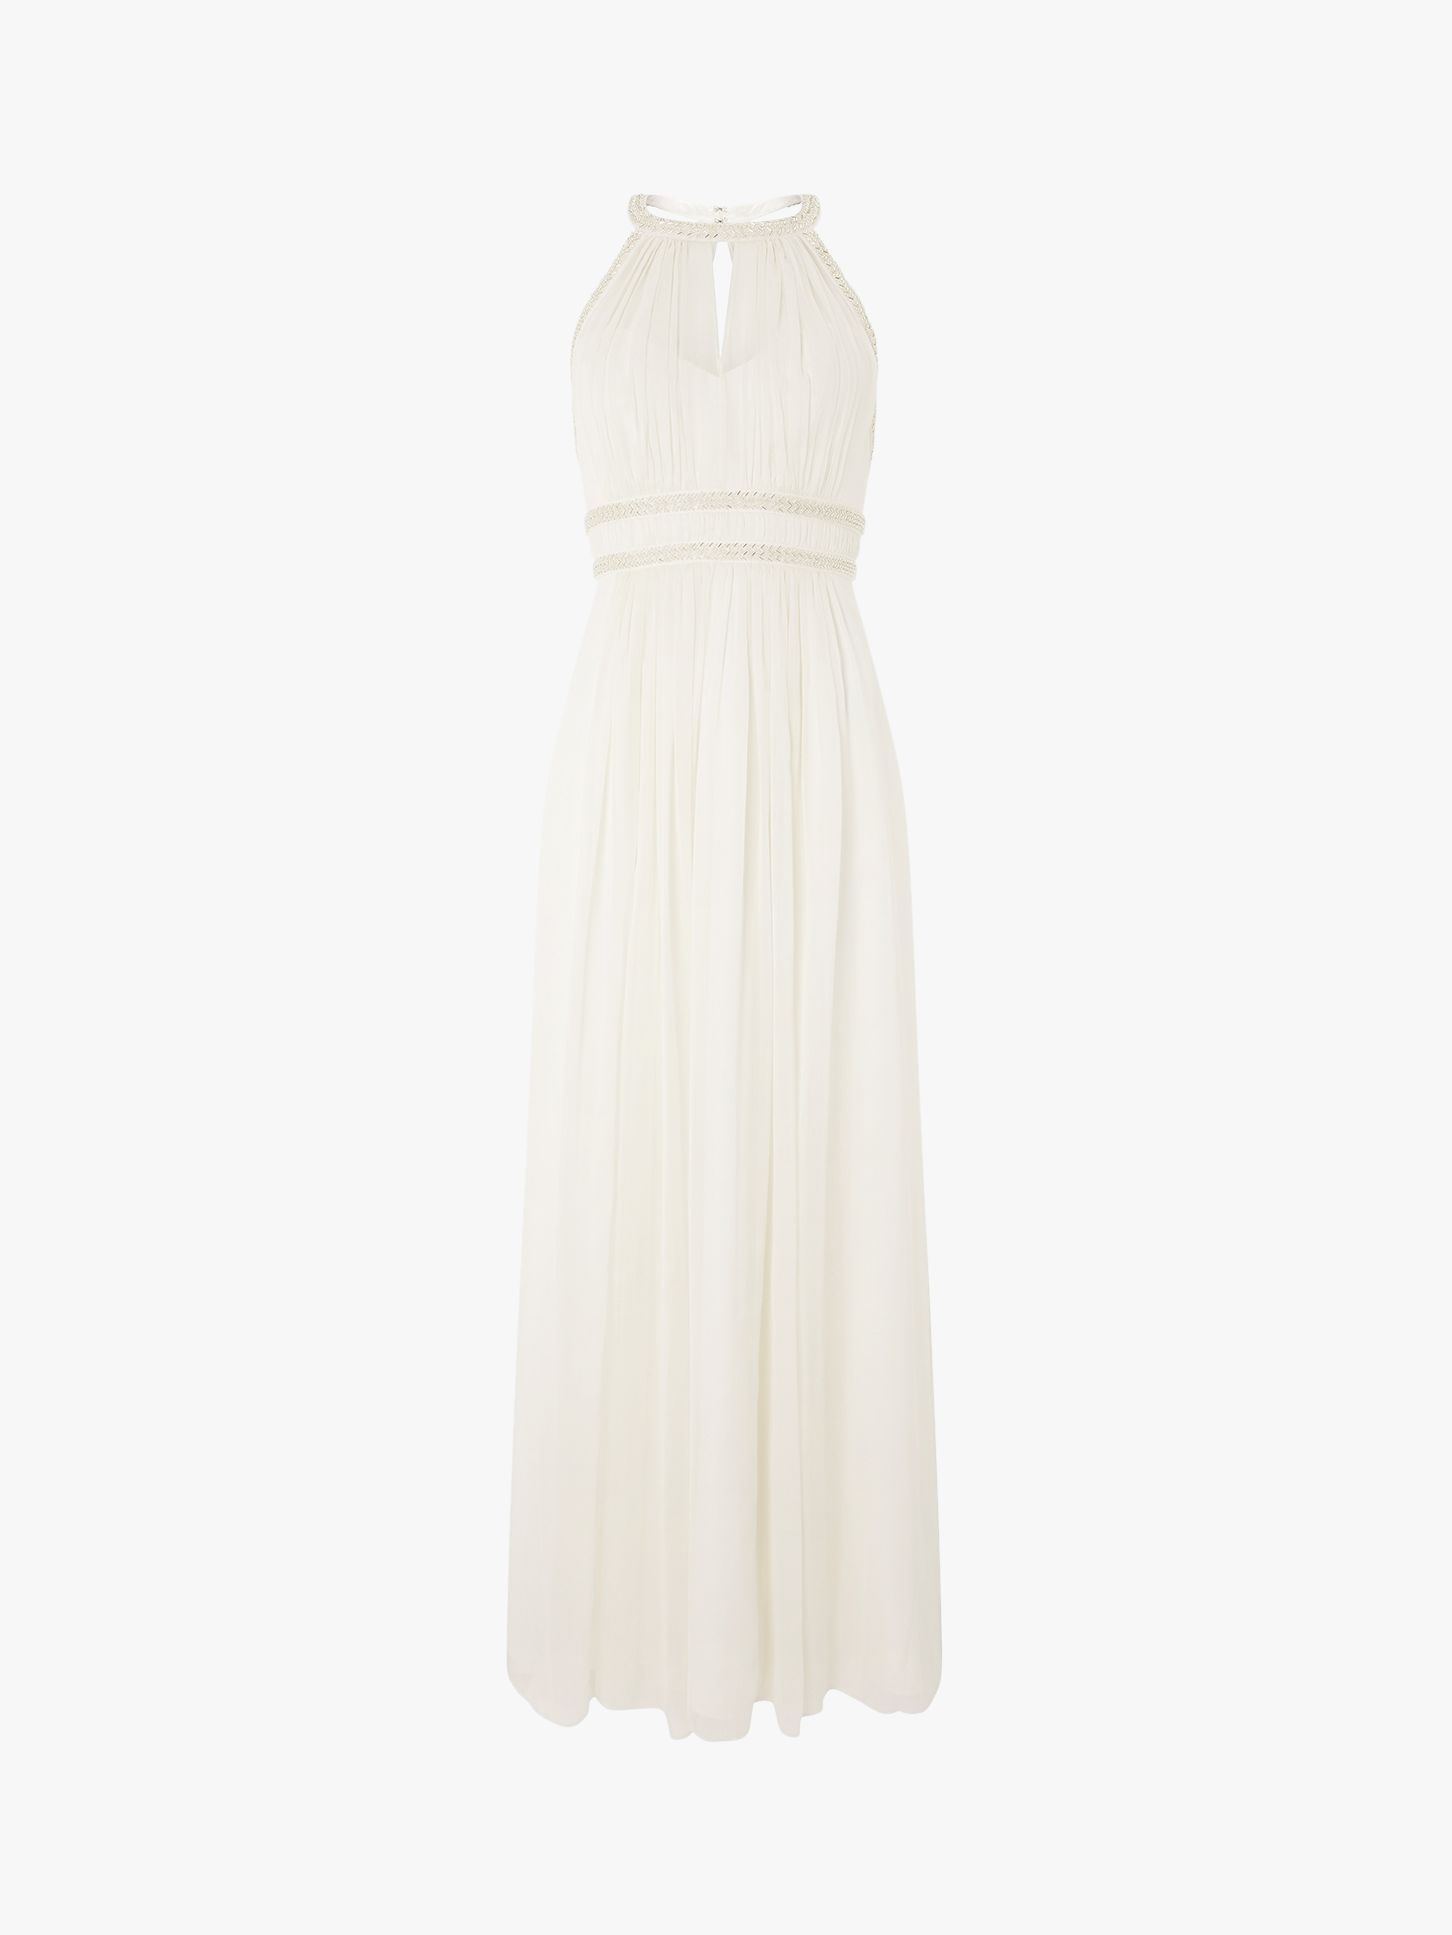 Monsoon Elanor Embellished Grecian Wedding Dress, Ivory